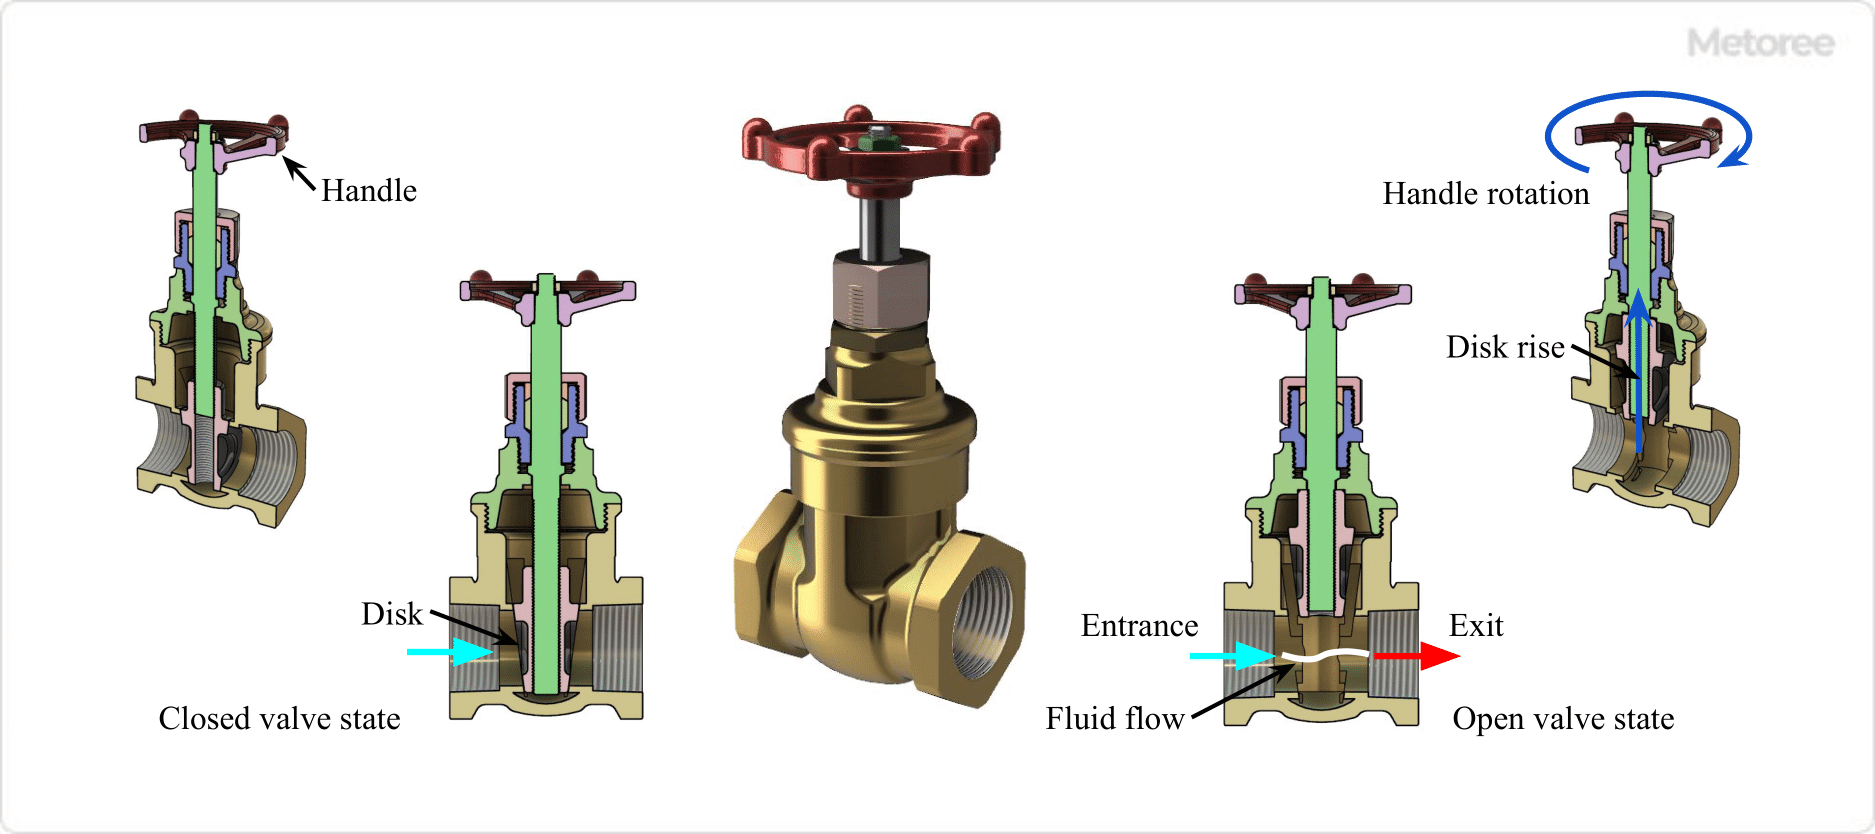 Figure 3. Partition valve